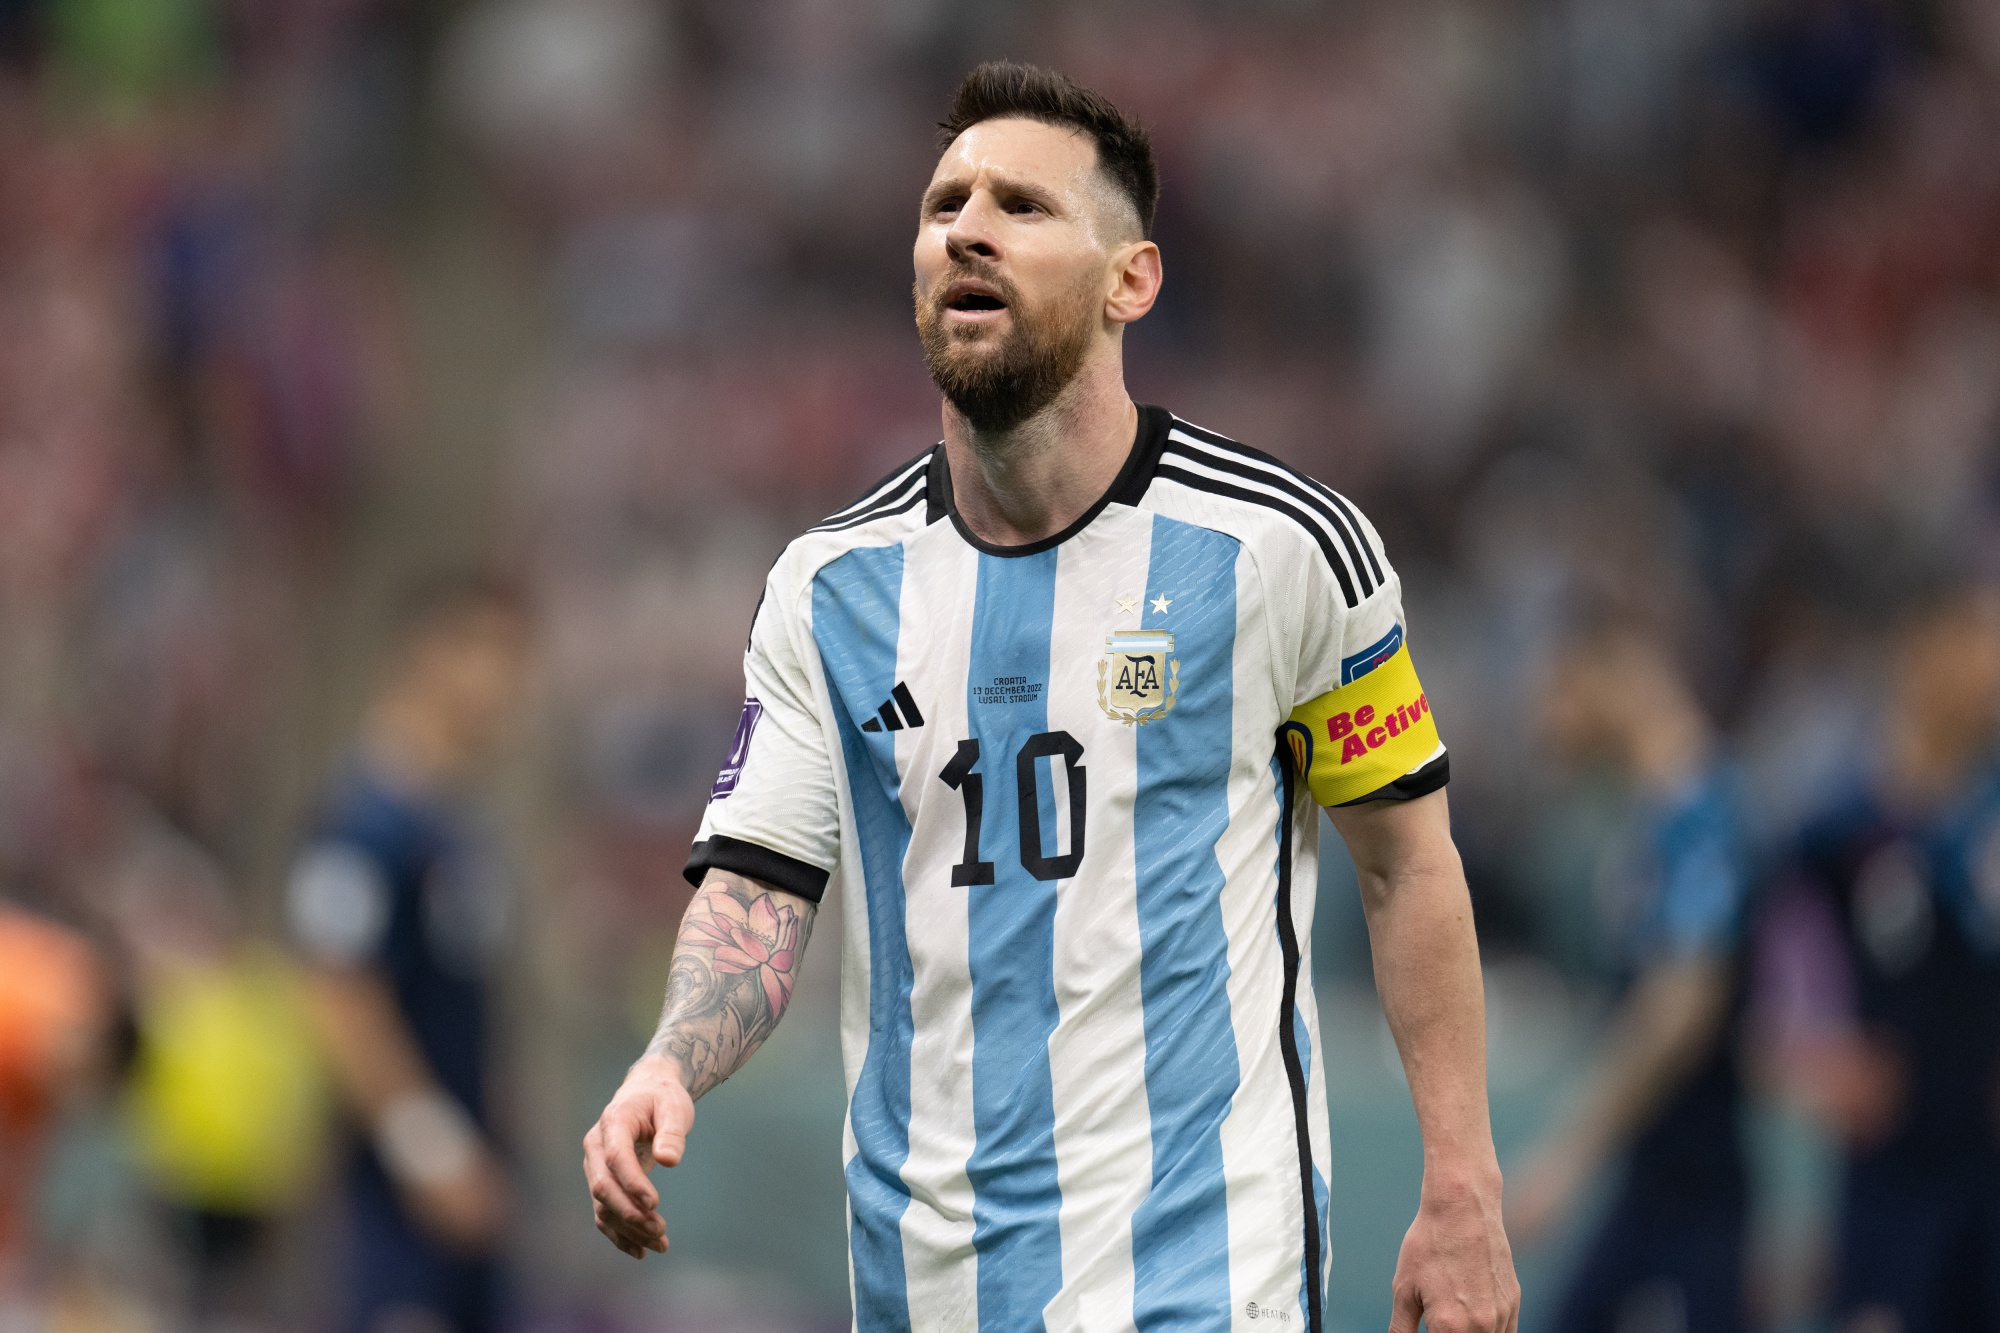 Oferta de camisetas de Messi escasea antes de la final